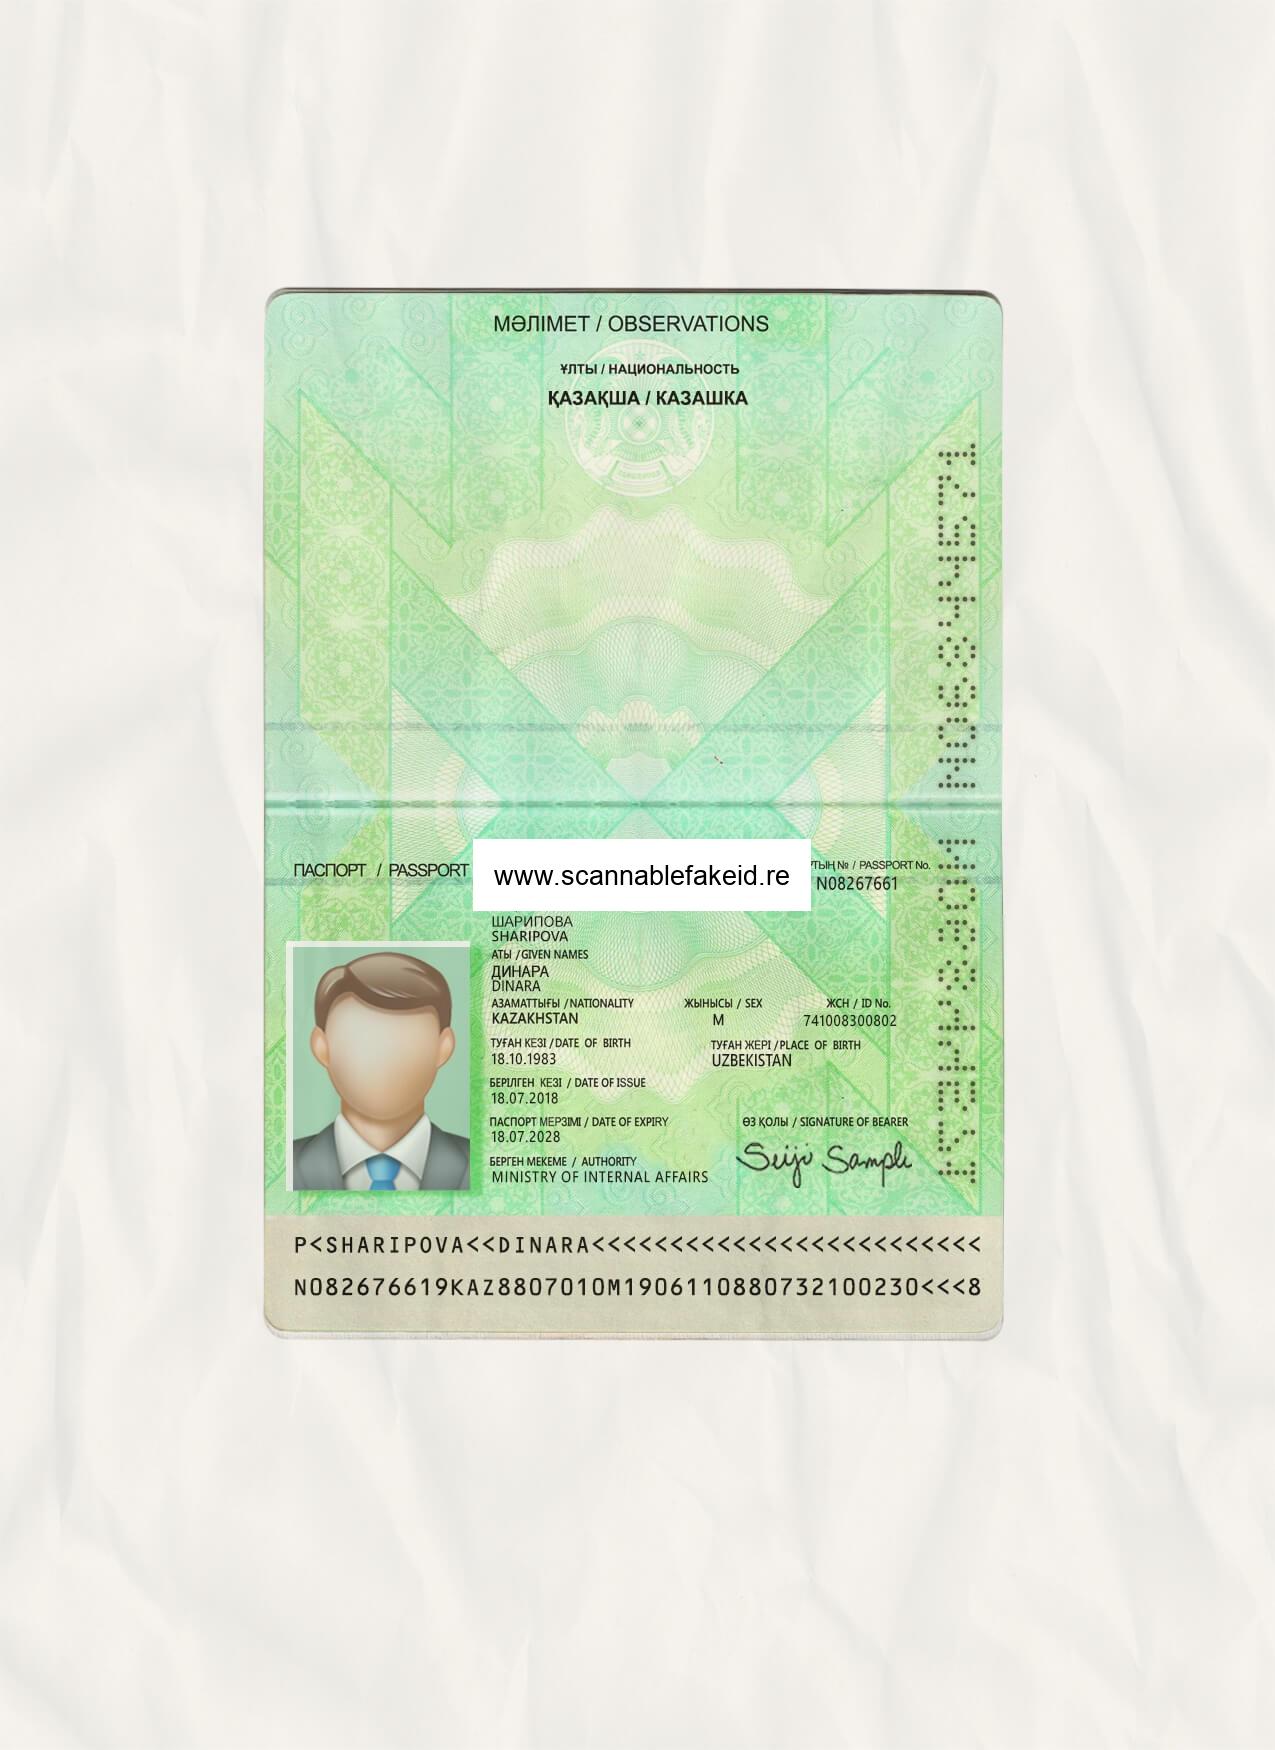 Kazakhstan Fake Passport - Buy Scannable Fake ID Online - Fake Drivers ...